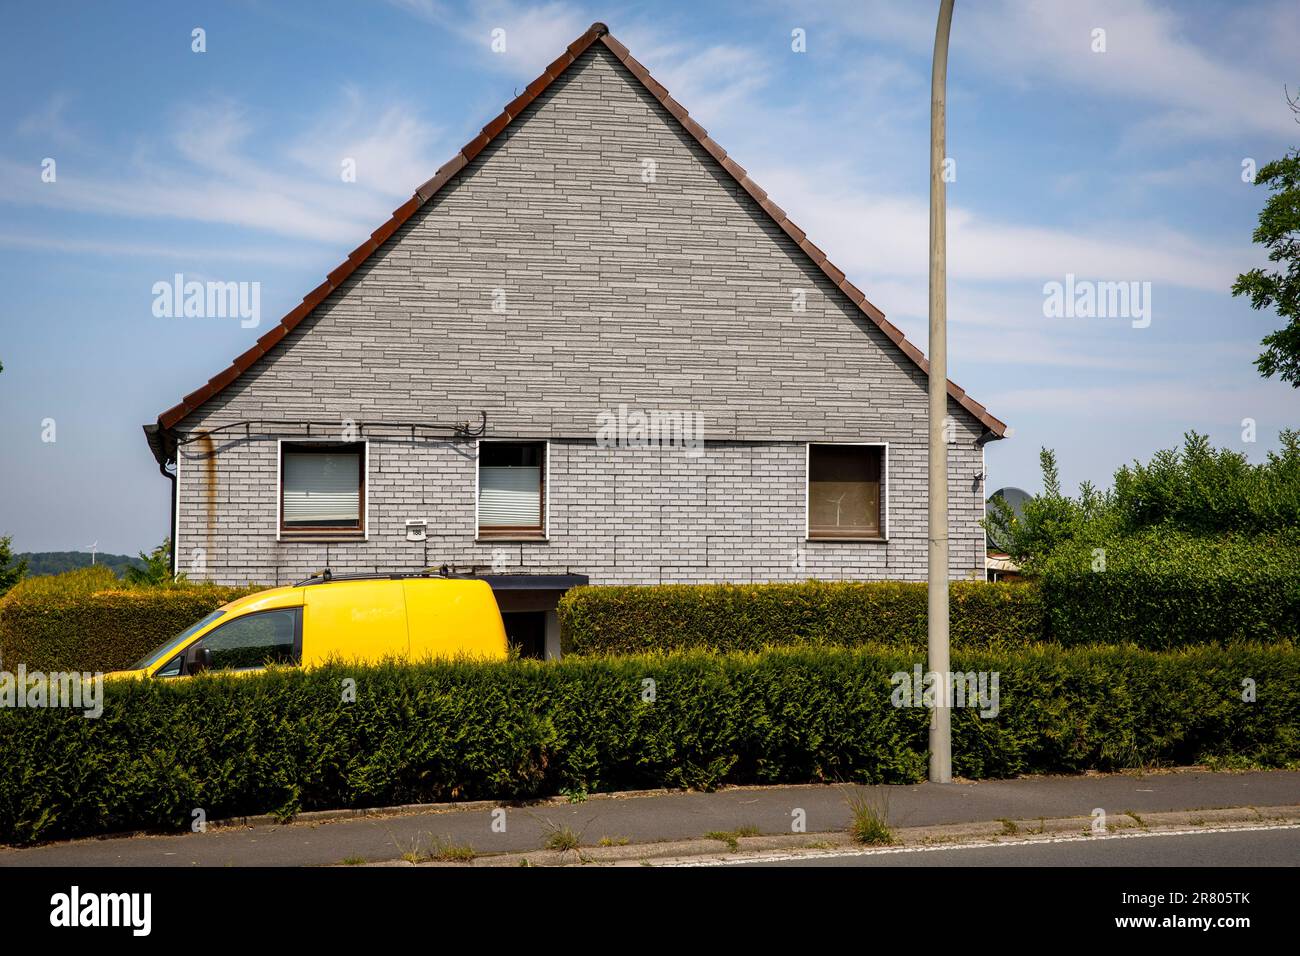 Un'auto gialla si trova dietro una siepe di fronte a una casa in mattoni grigi a Gevelsberg-Silschede, Renania settentrionale-Vestfalia, Germania. ein gelbes Auto steht suggerimento Foto Stock